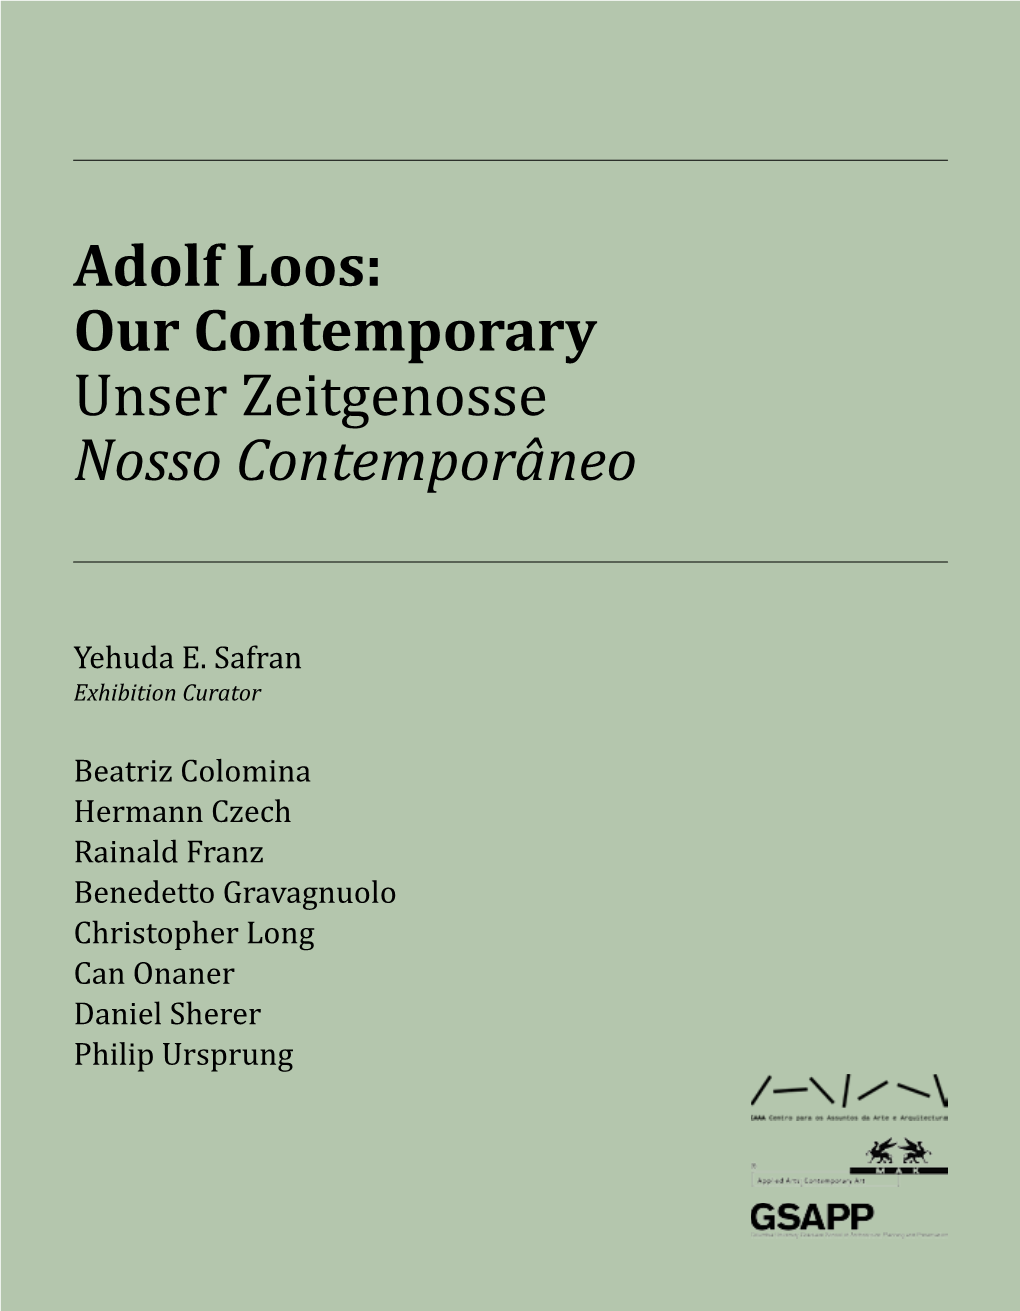 Adolf Loos: Our Contemporary Unser Zeitgenosse Nosso Contemporâneo